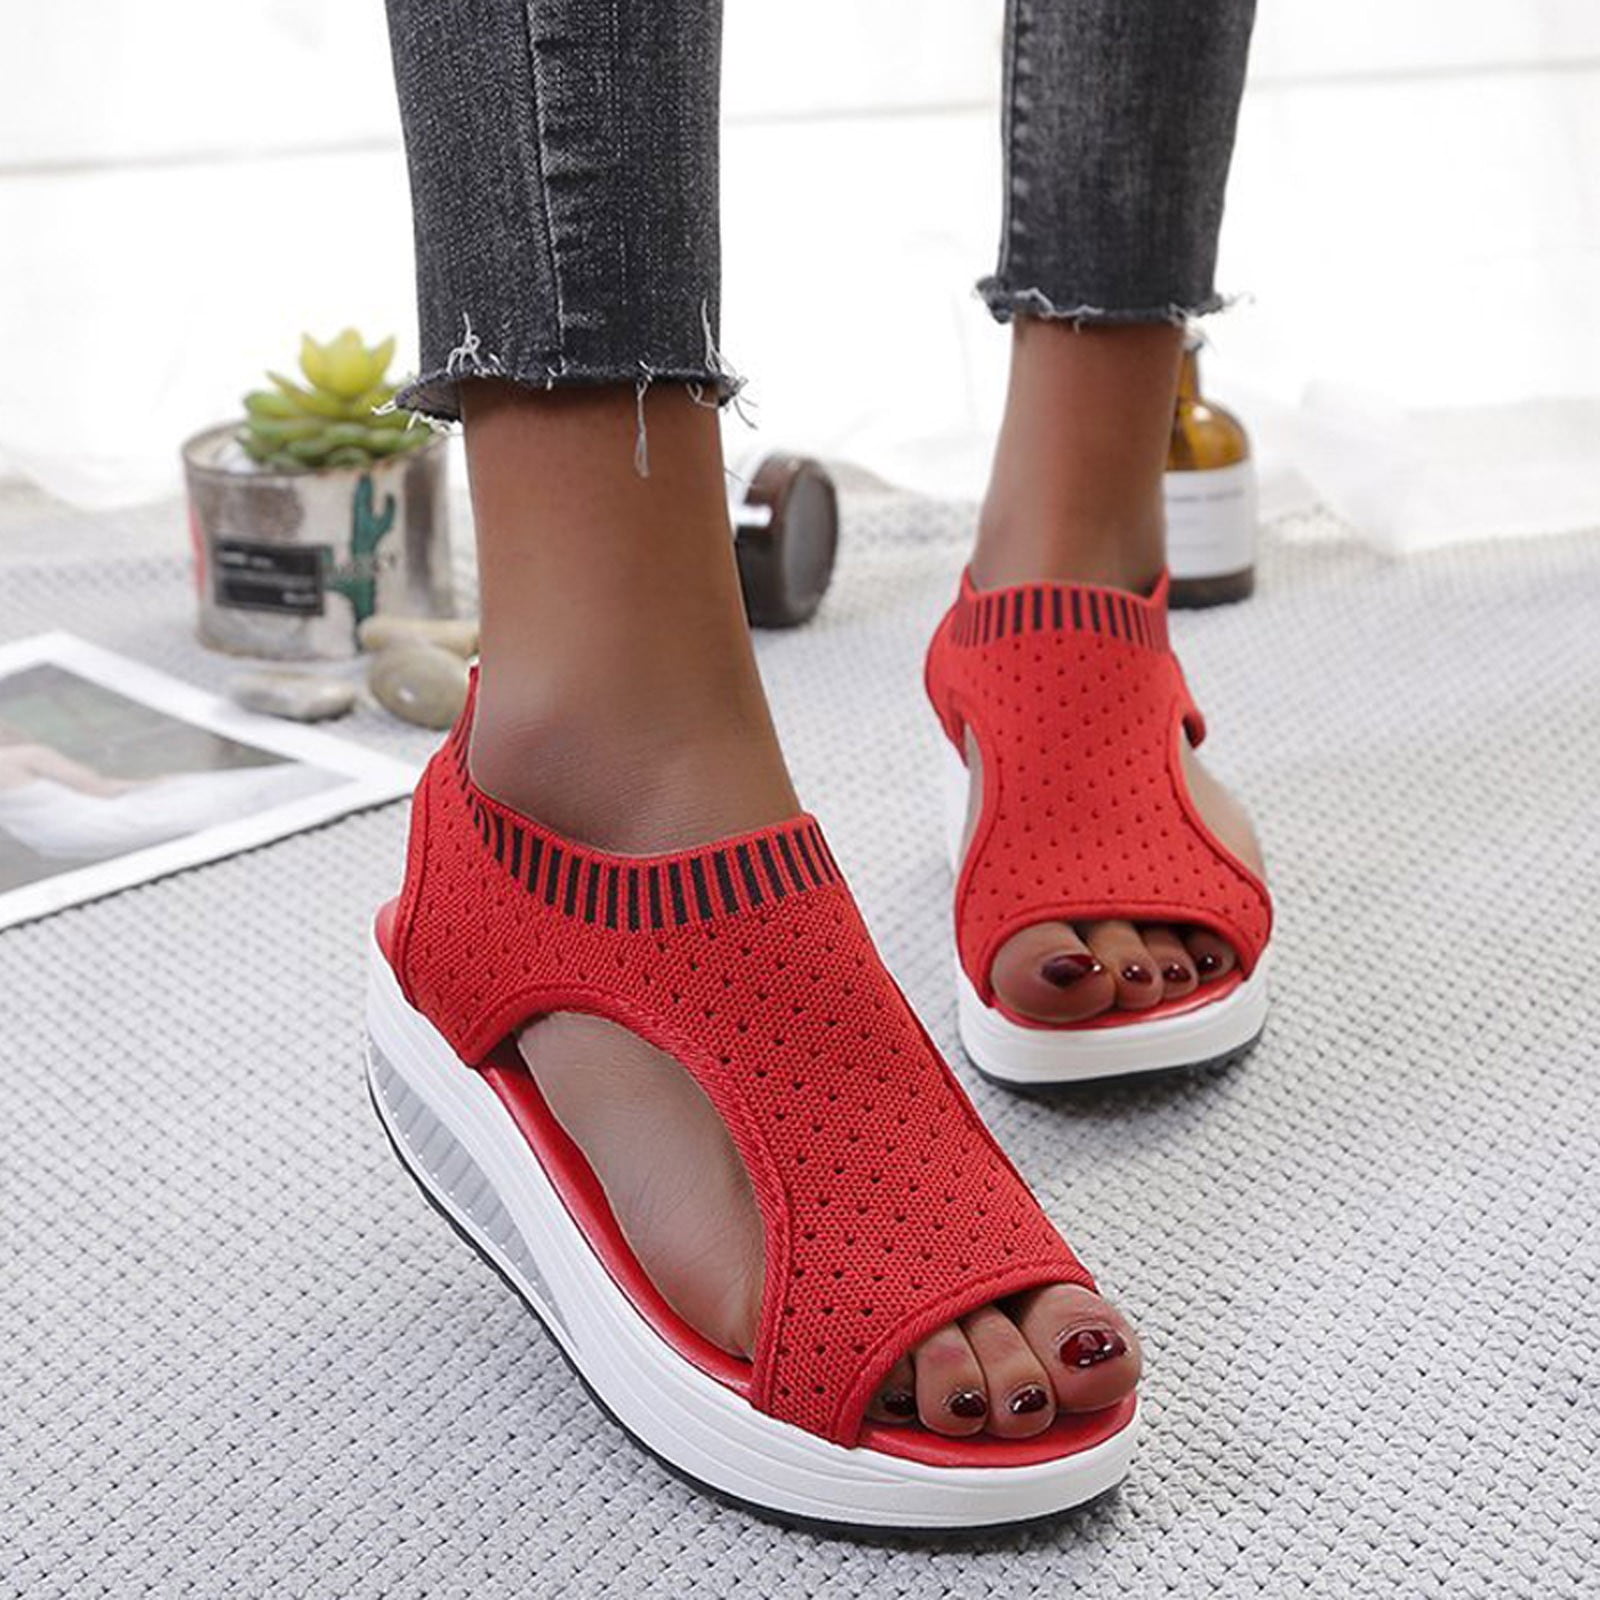 Red Bottom Shoes Women Sandal, Platform Red Bottom Sandals